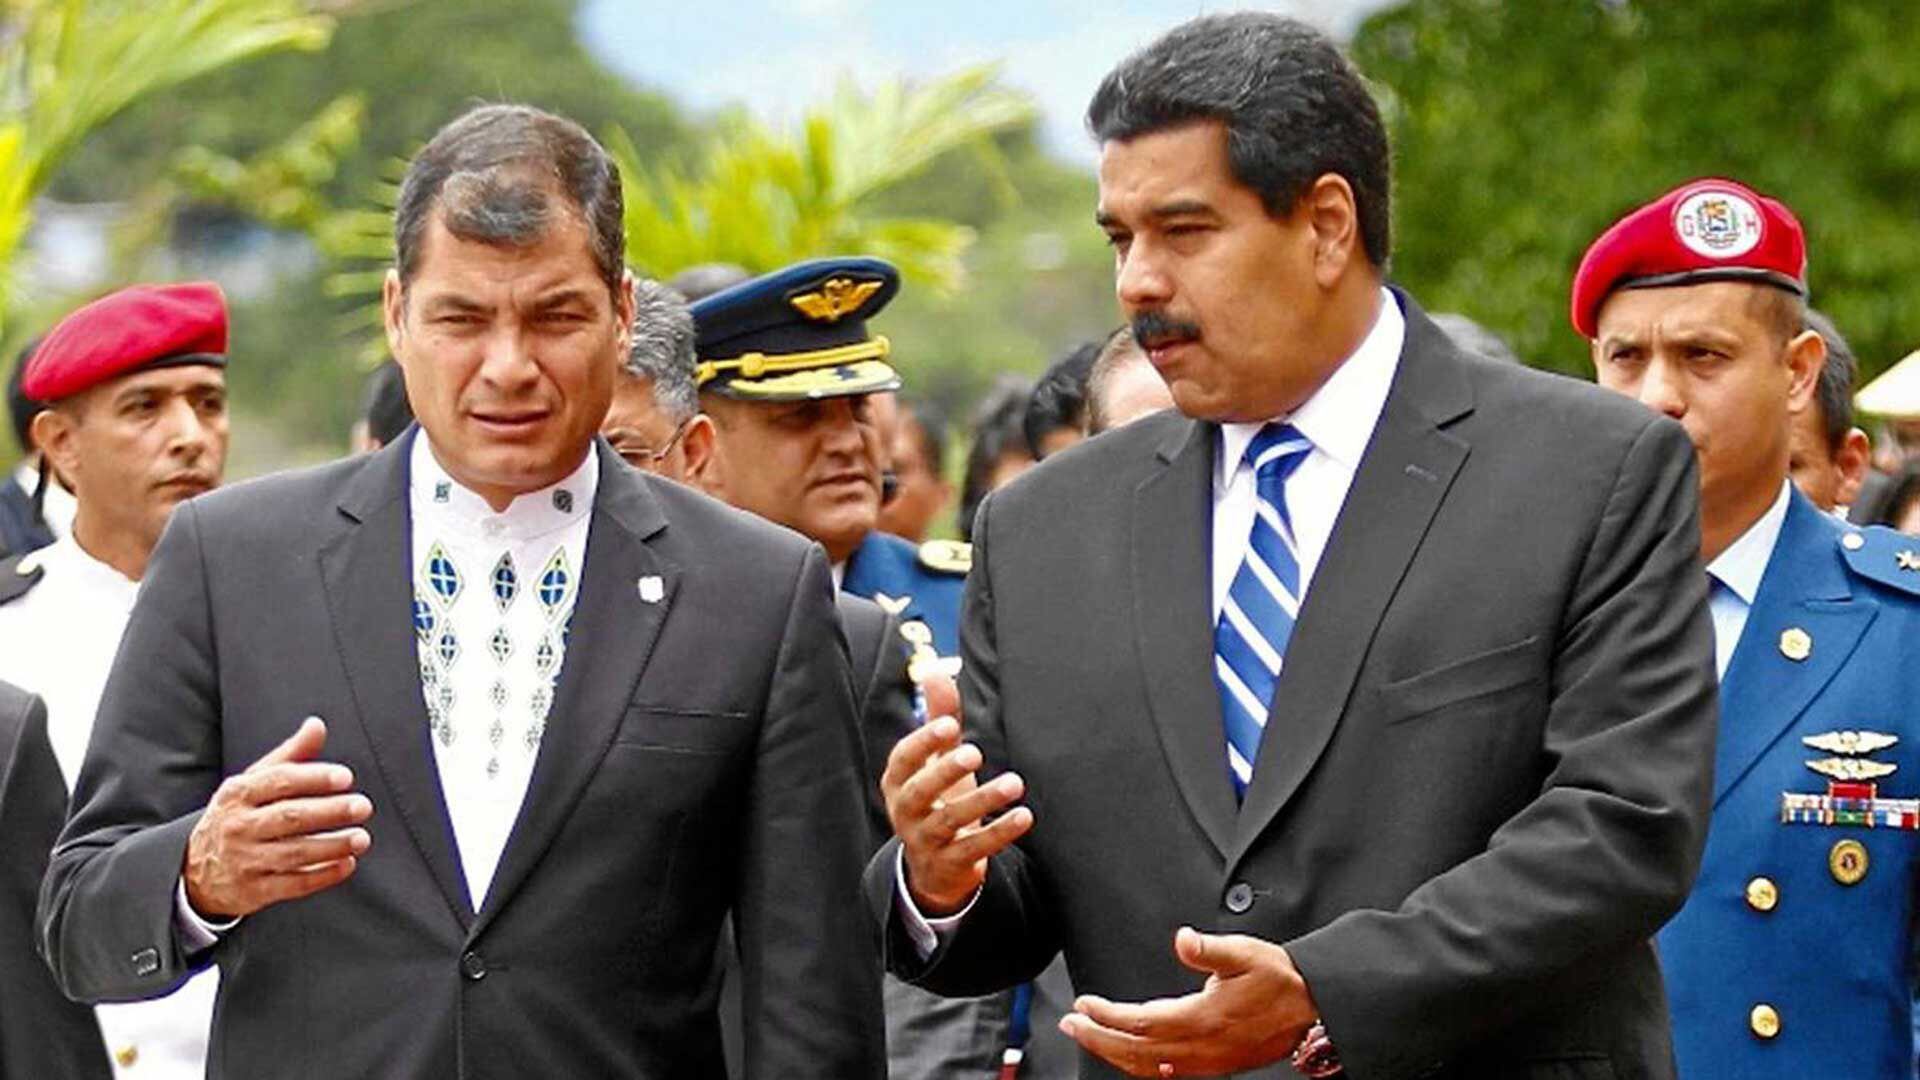 El dictador venezolano Nicolás Maduro junto con su par ecuatoriano, Rafael Correa. El ex presidente radicado en Bruselas hace trabajos de "consultoría" para el régimen de Venezuela